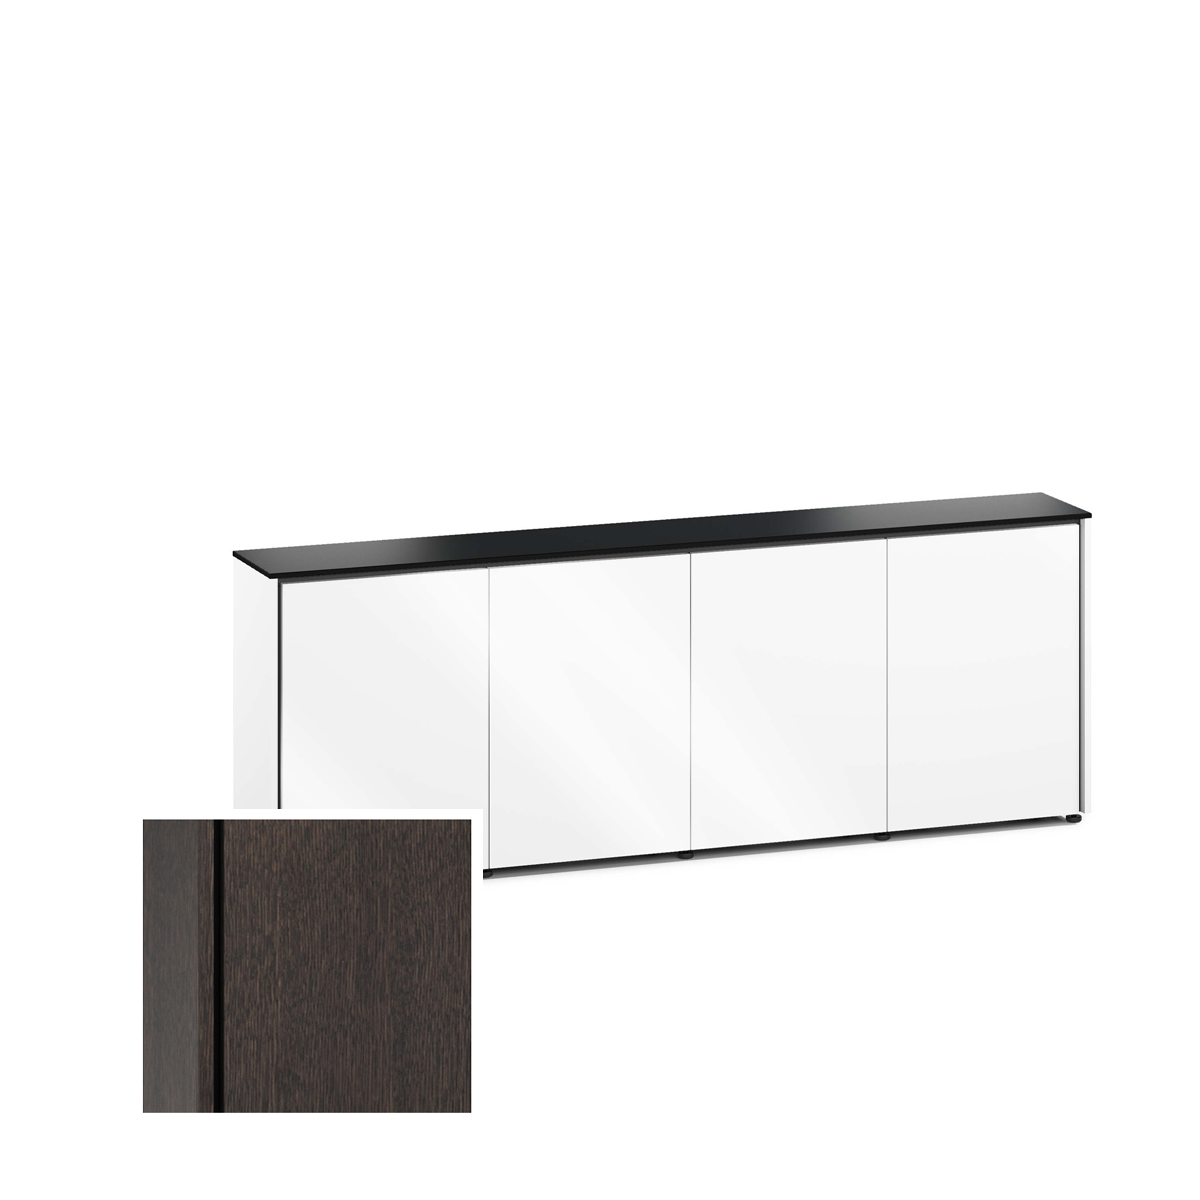 D1/347A/SN/WO 4 Bay Low-Profile, Wall Cabinet, Sienna / Wenge Oak